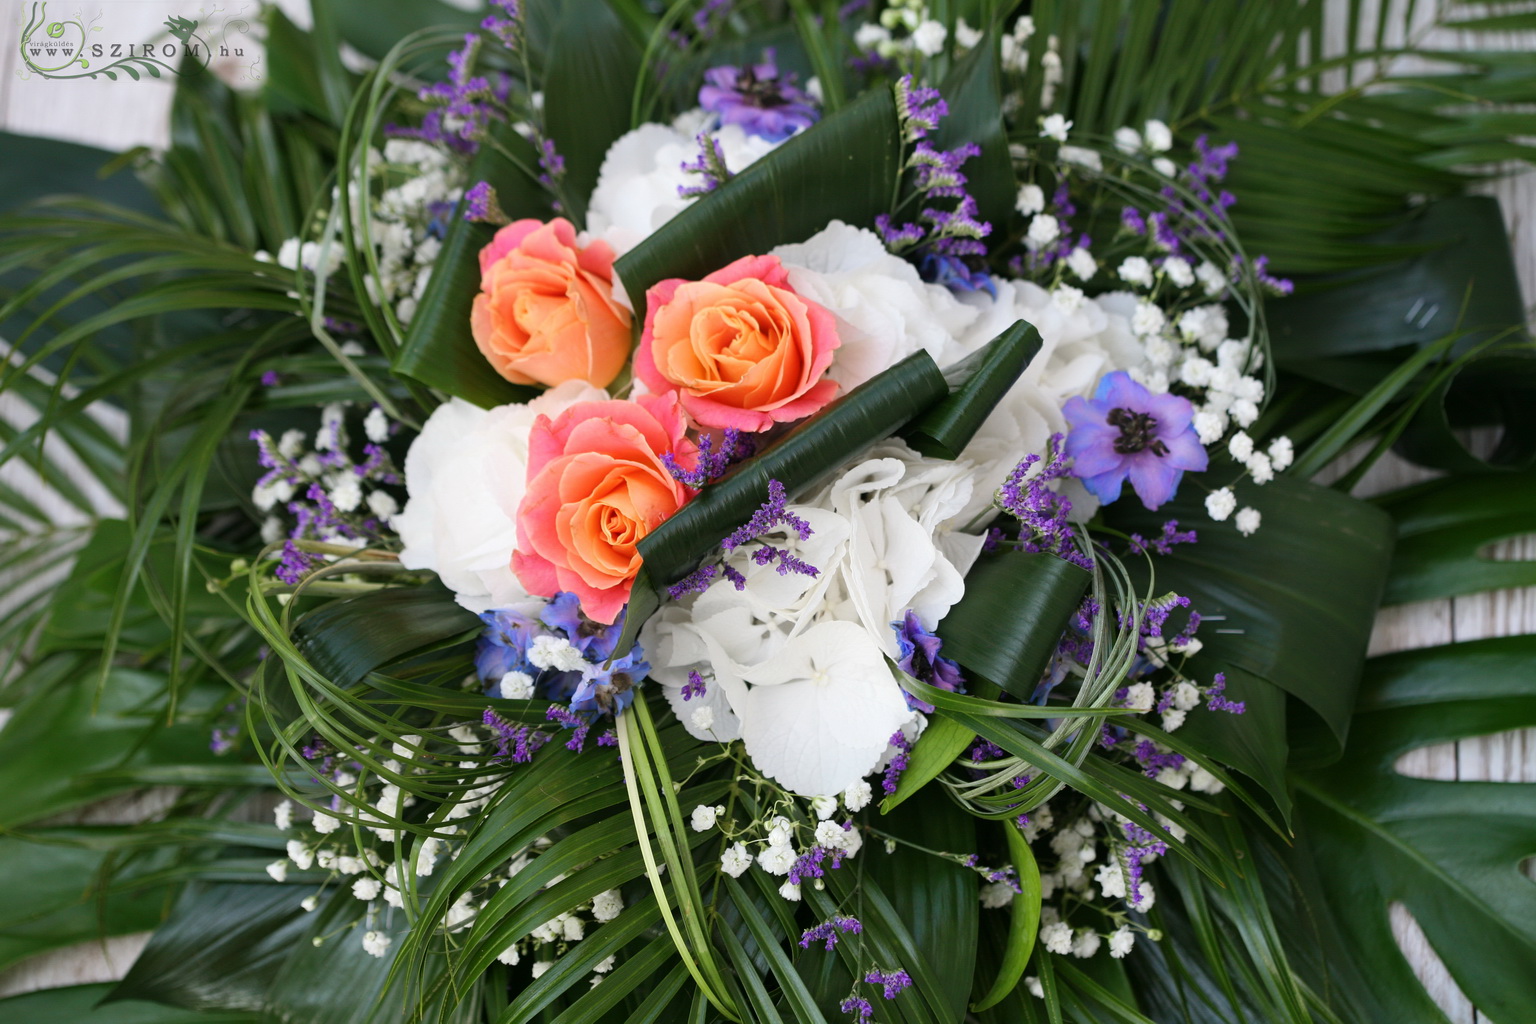 Virágküldés Budapest - autódísz (rózsa, hortenzia, sóvirág, rezgő, idényvirágok, narancs, fehér, lila)